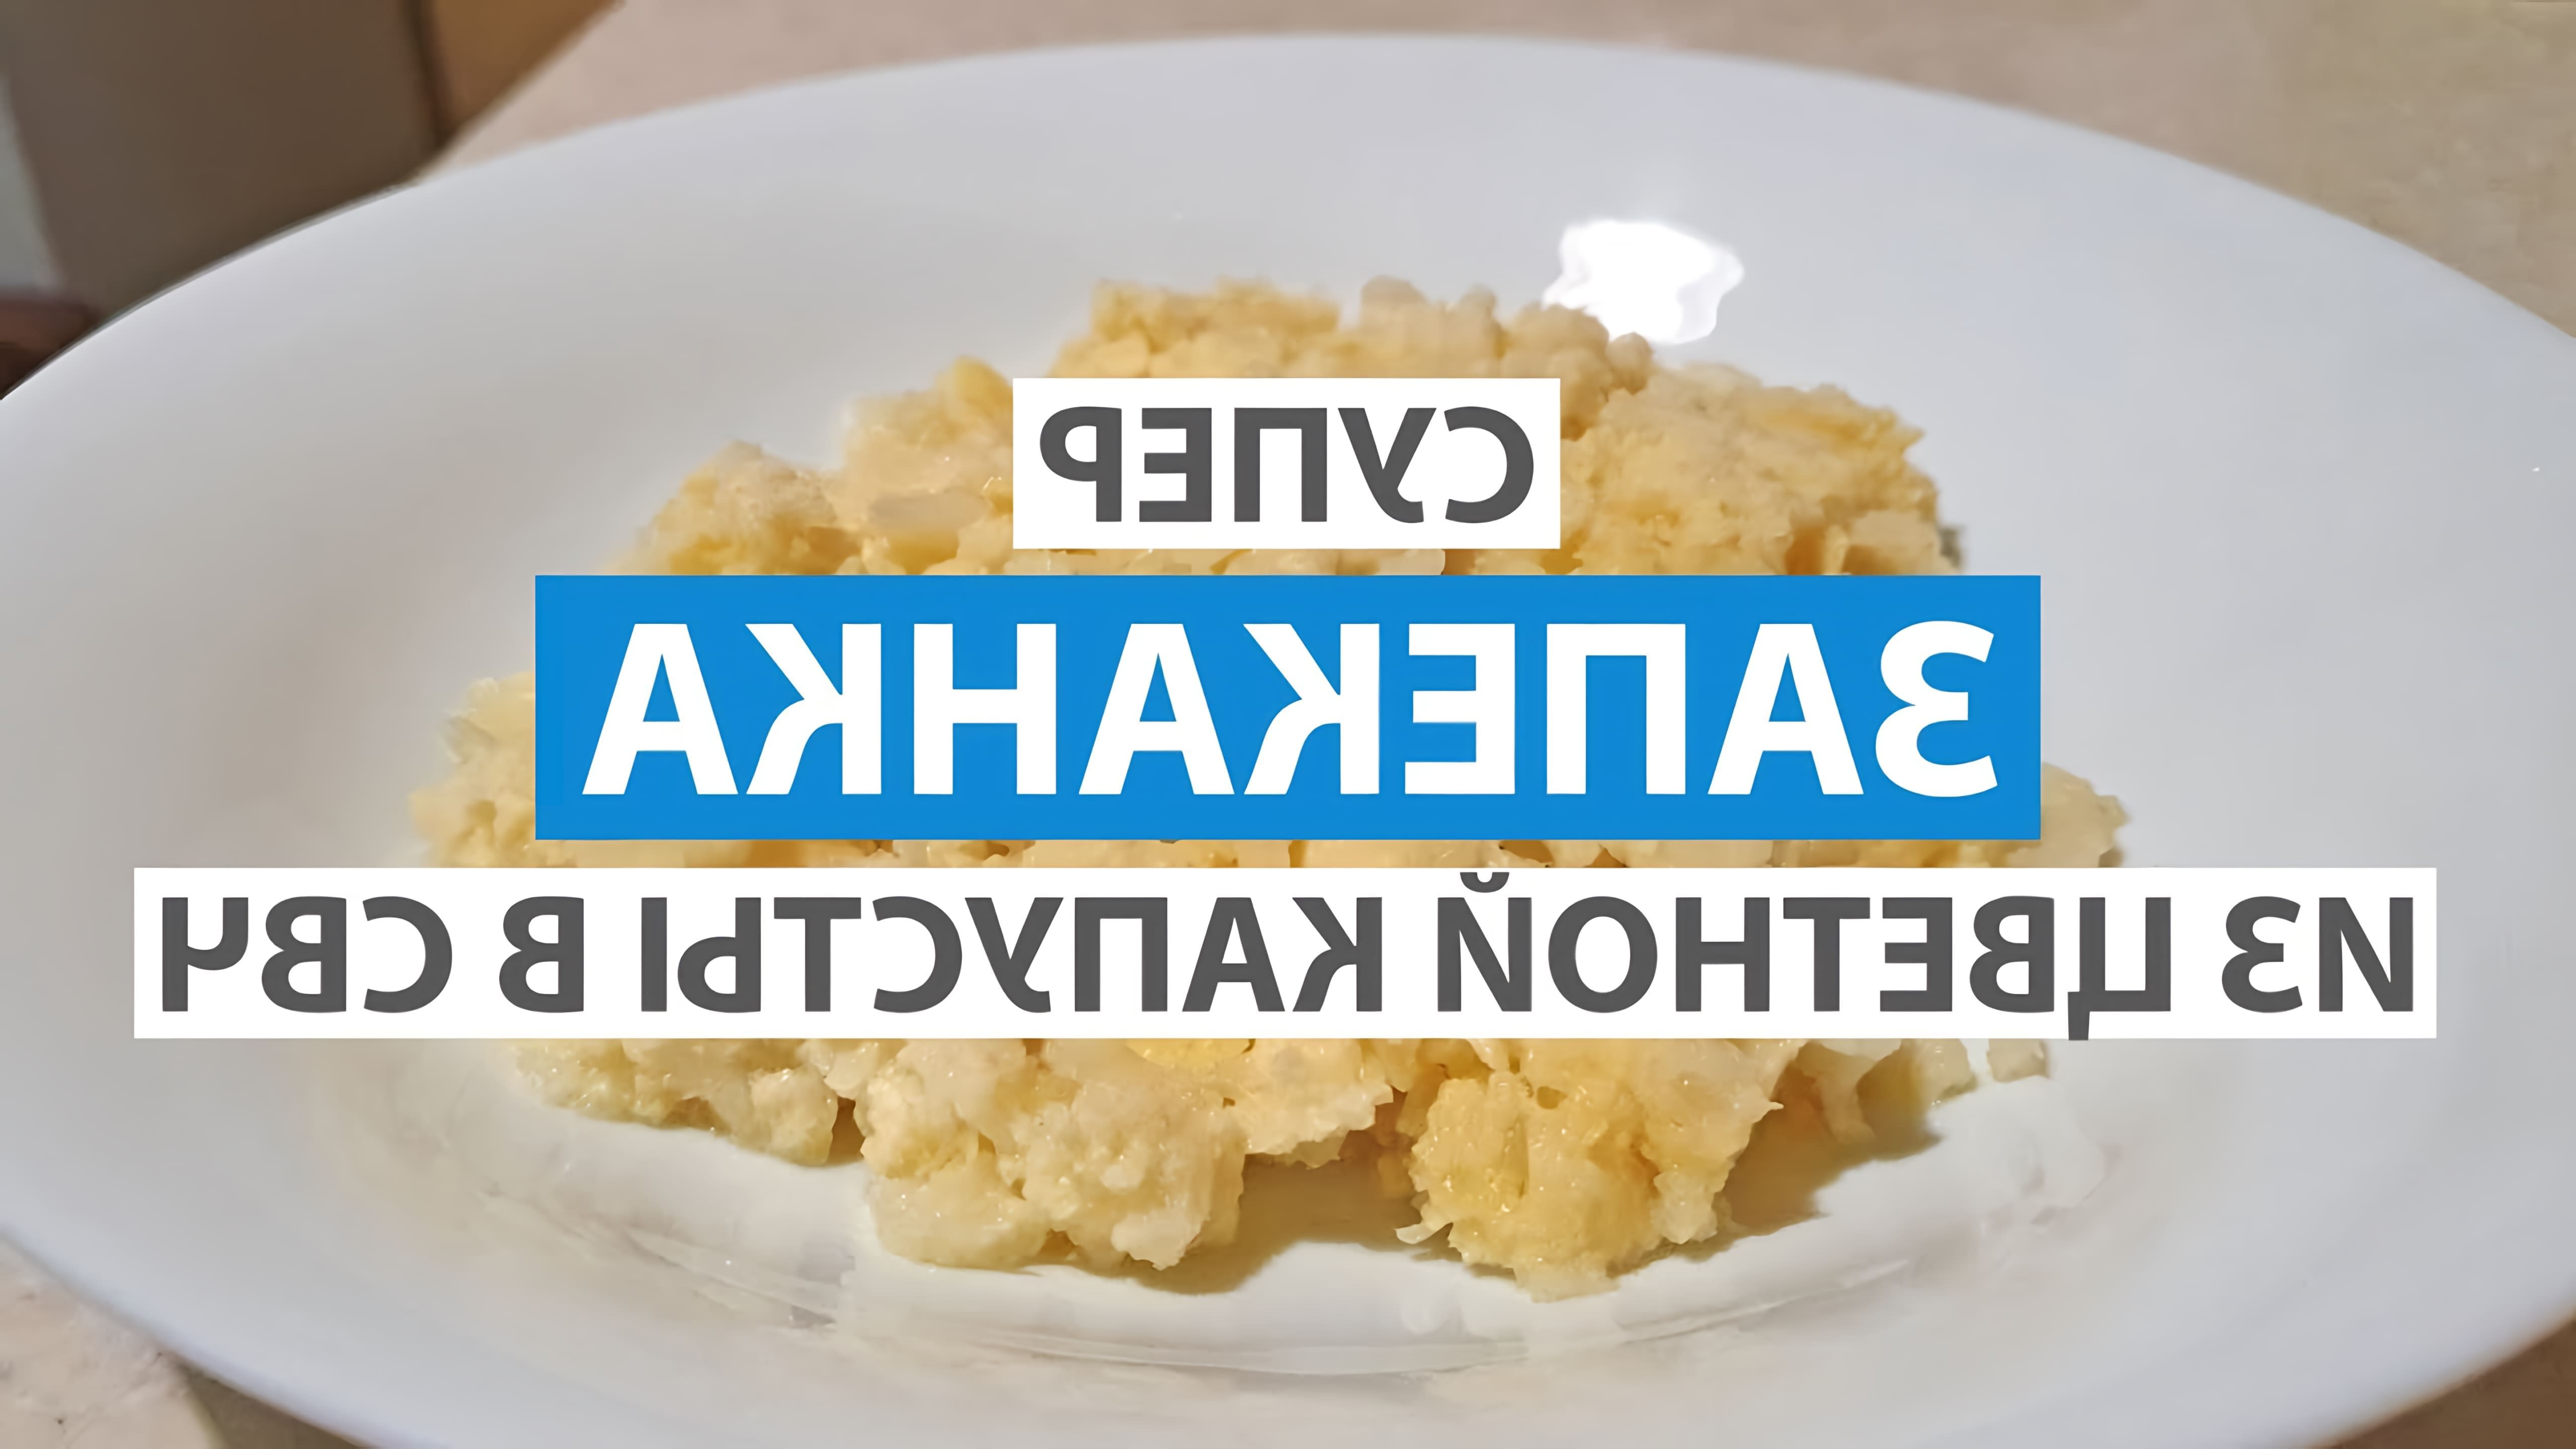 В этом видео демонстрируется рецепт приготовления запеканки из цветной капусты в микроволновой печи